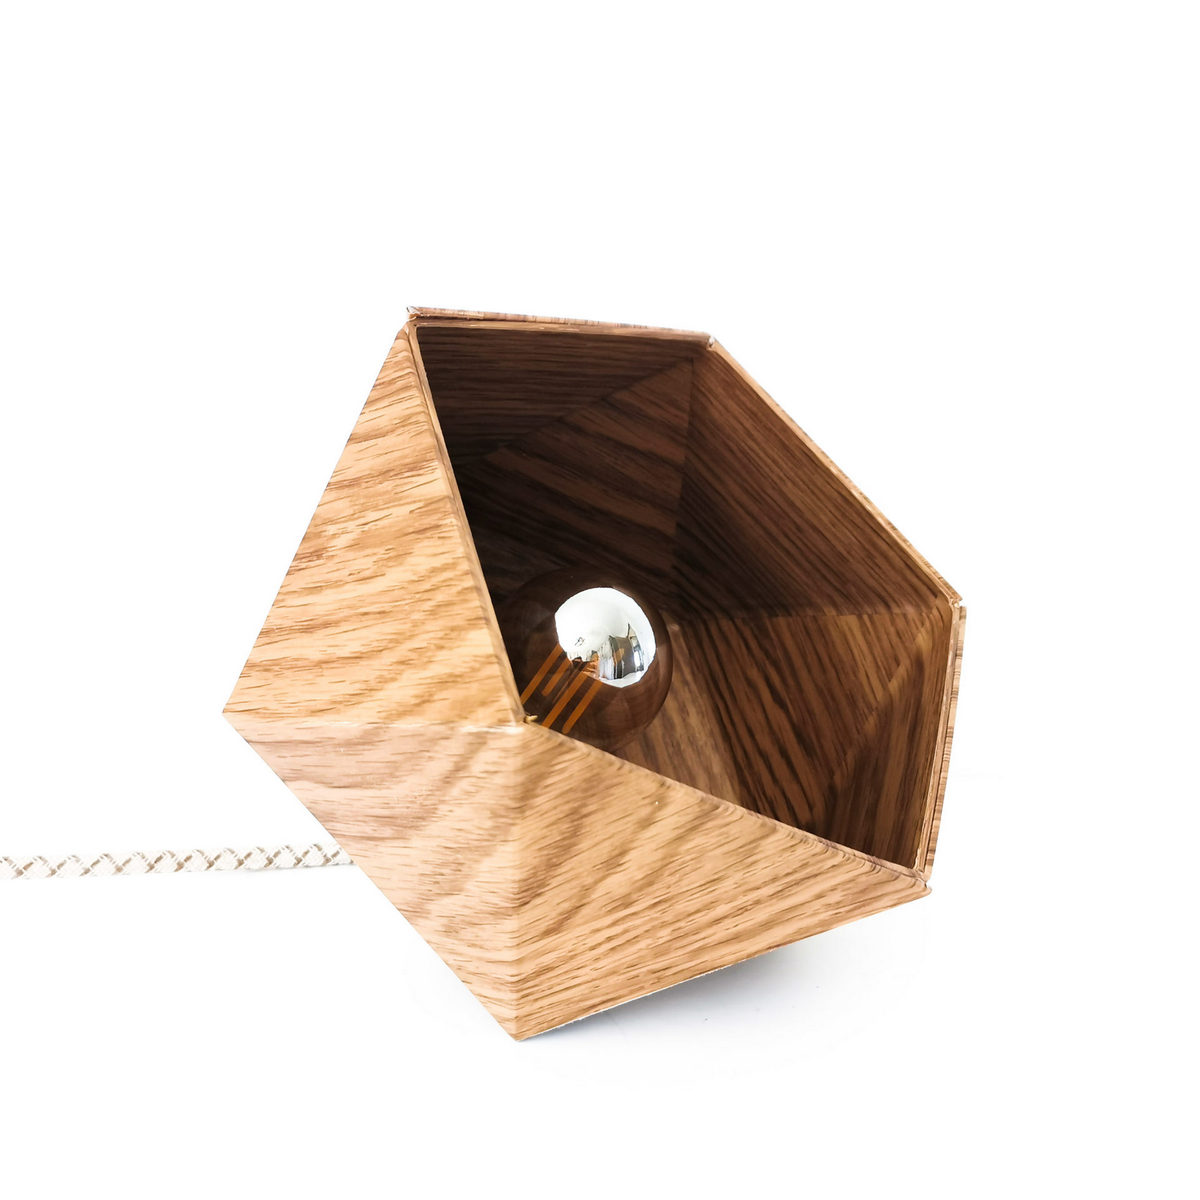 Petite lampe Origami, aspect chêne